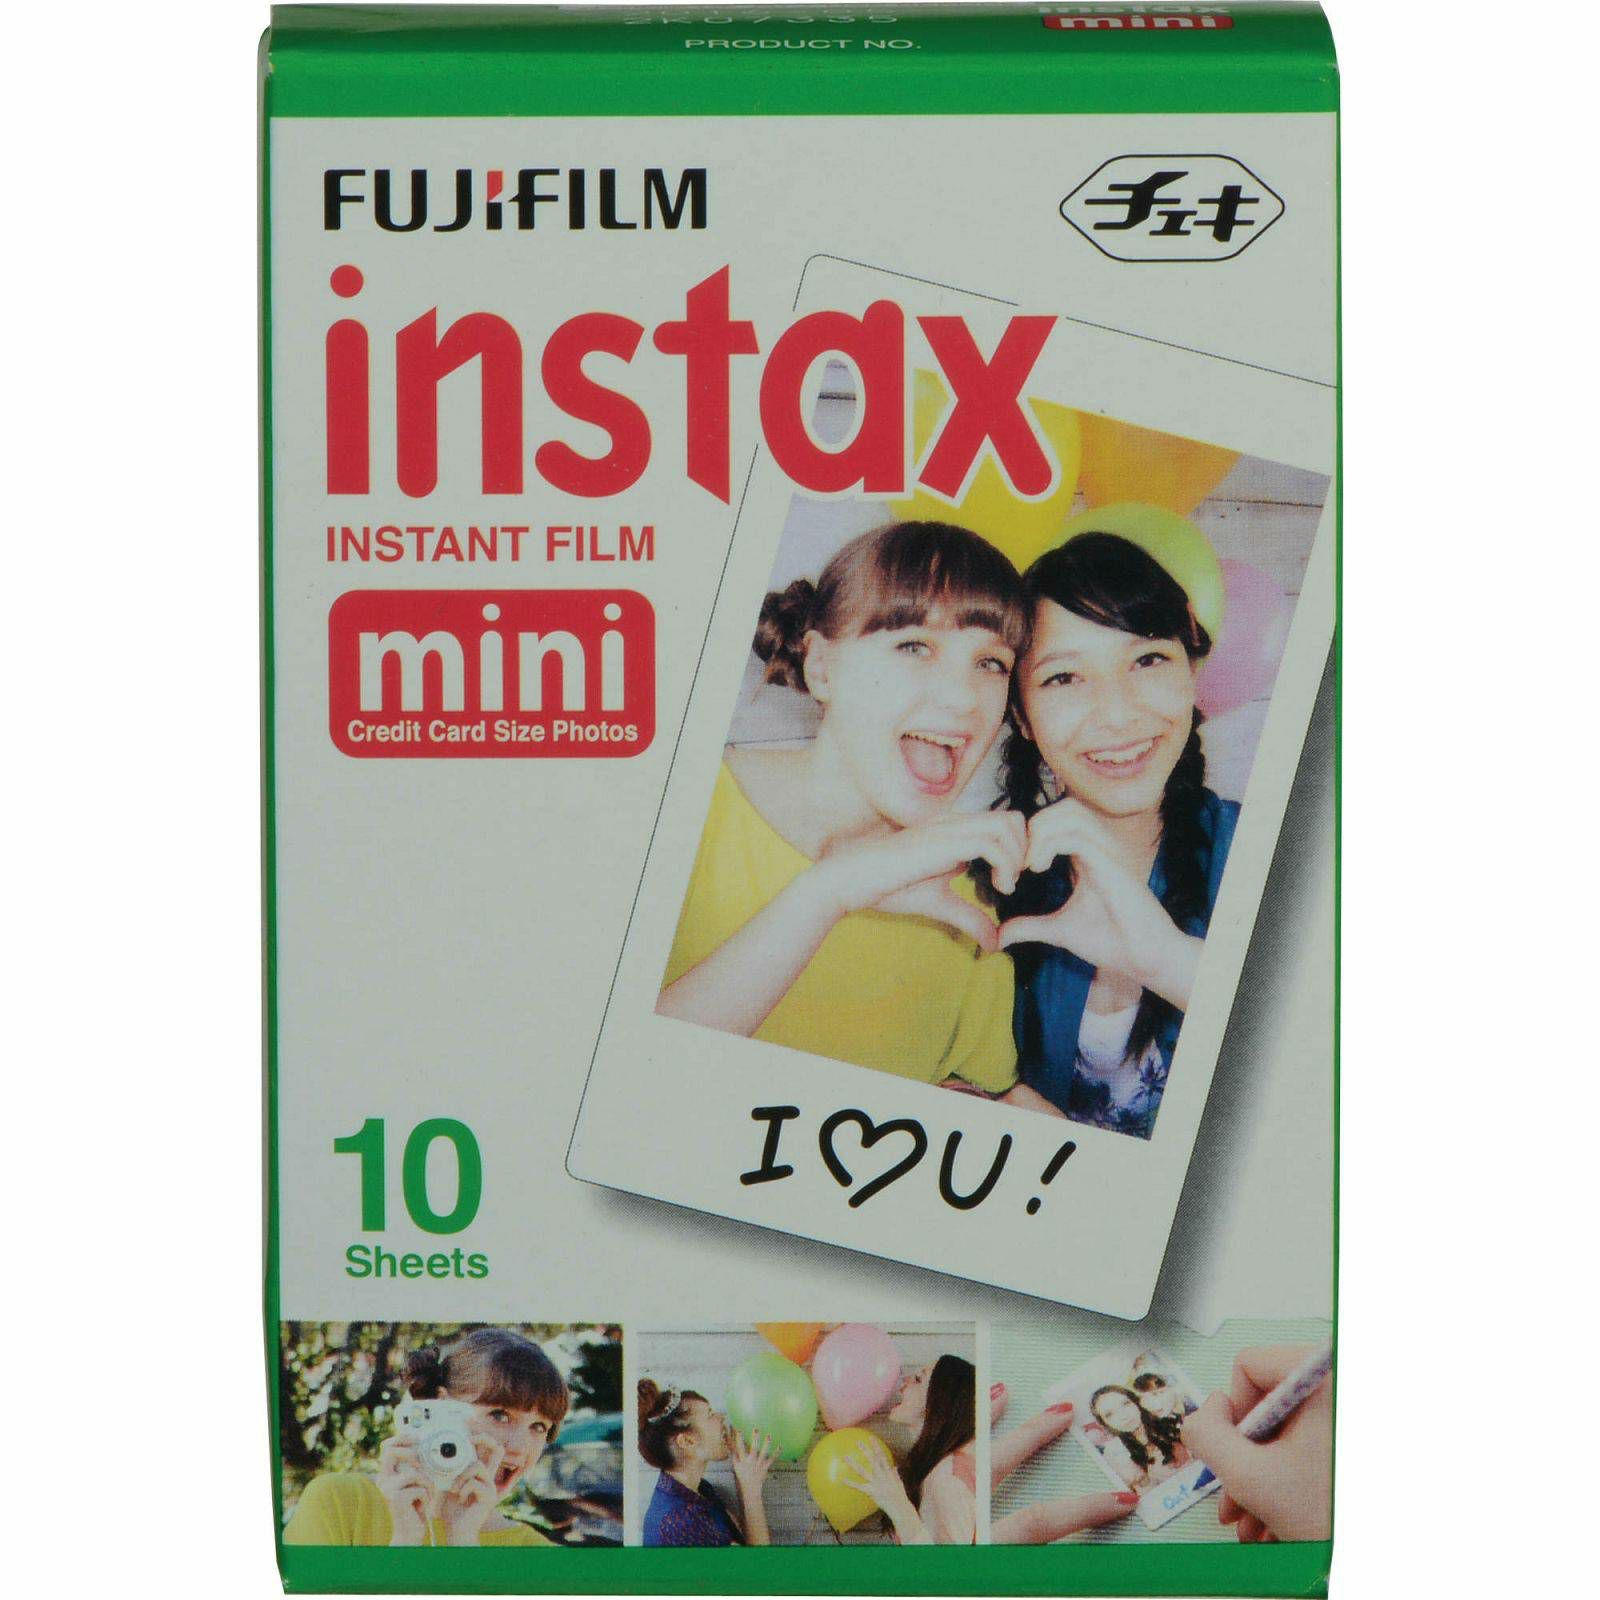 Fujifilm Instax Mini film foto papir 10 listova (1x10 bulk pakiranje) za instant fotoaparat Fuji Instax Mini, Lomography